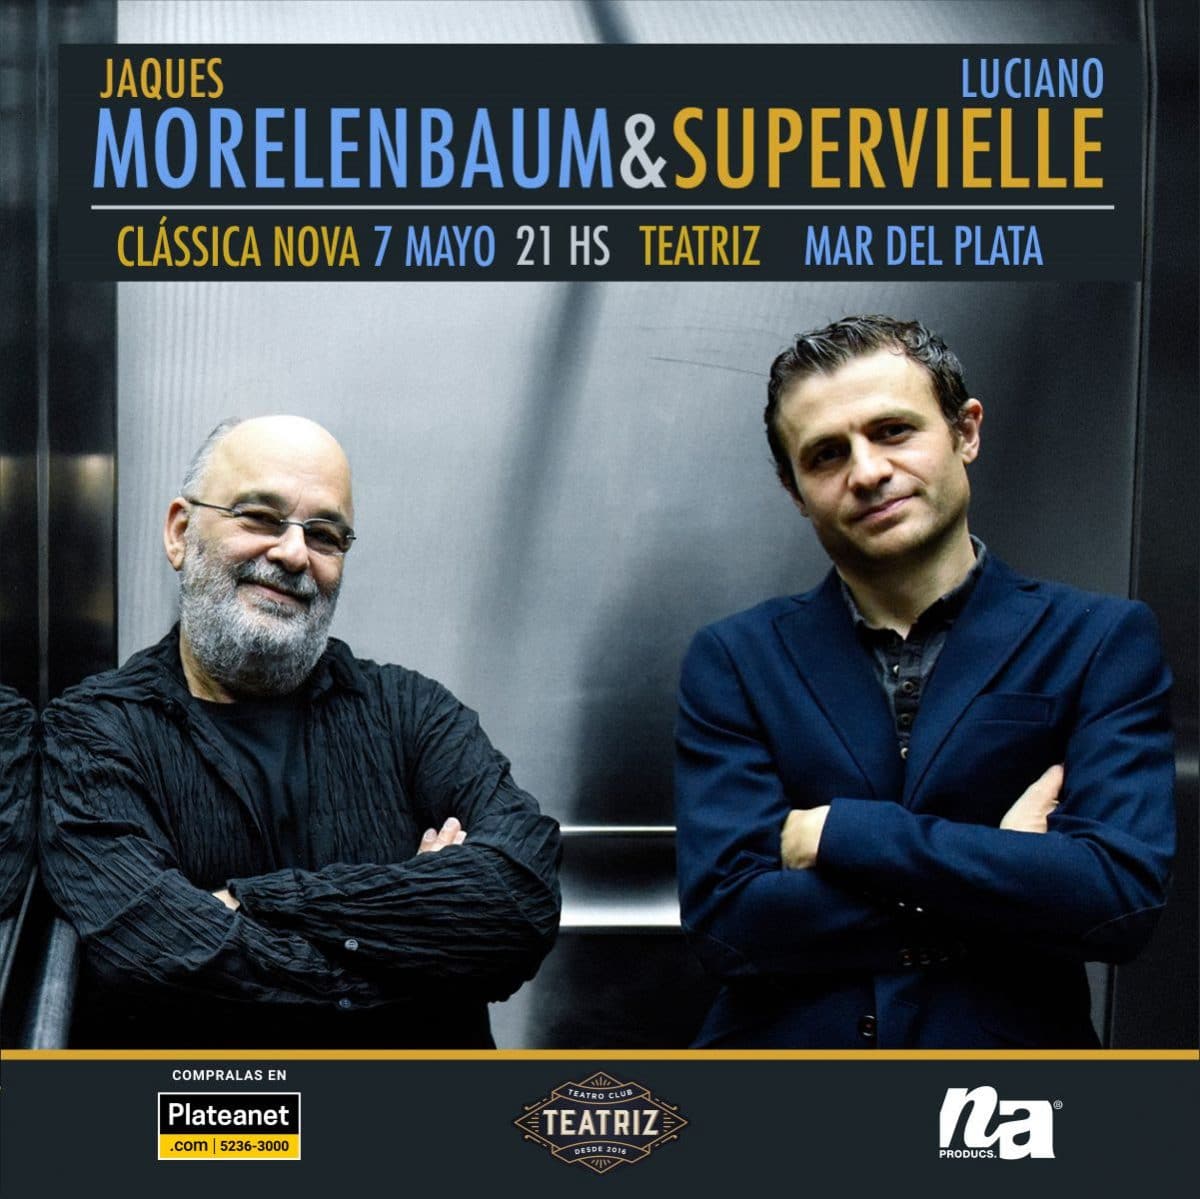 Morelembaum & Supervielle llegan a Mar del Plata con "Clássica Nova"